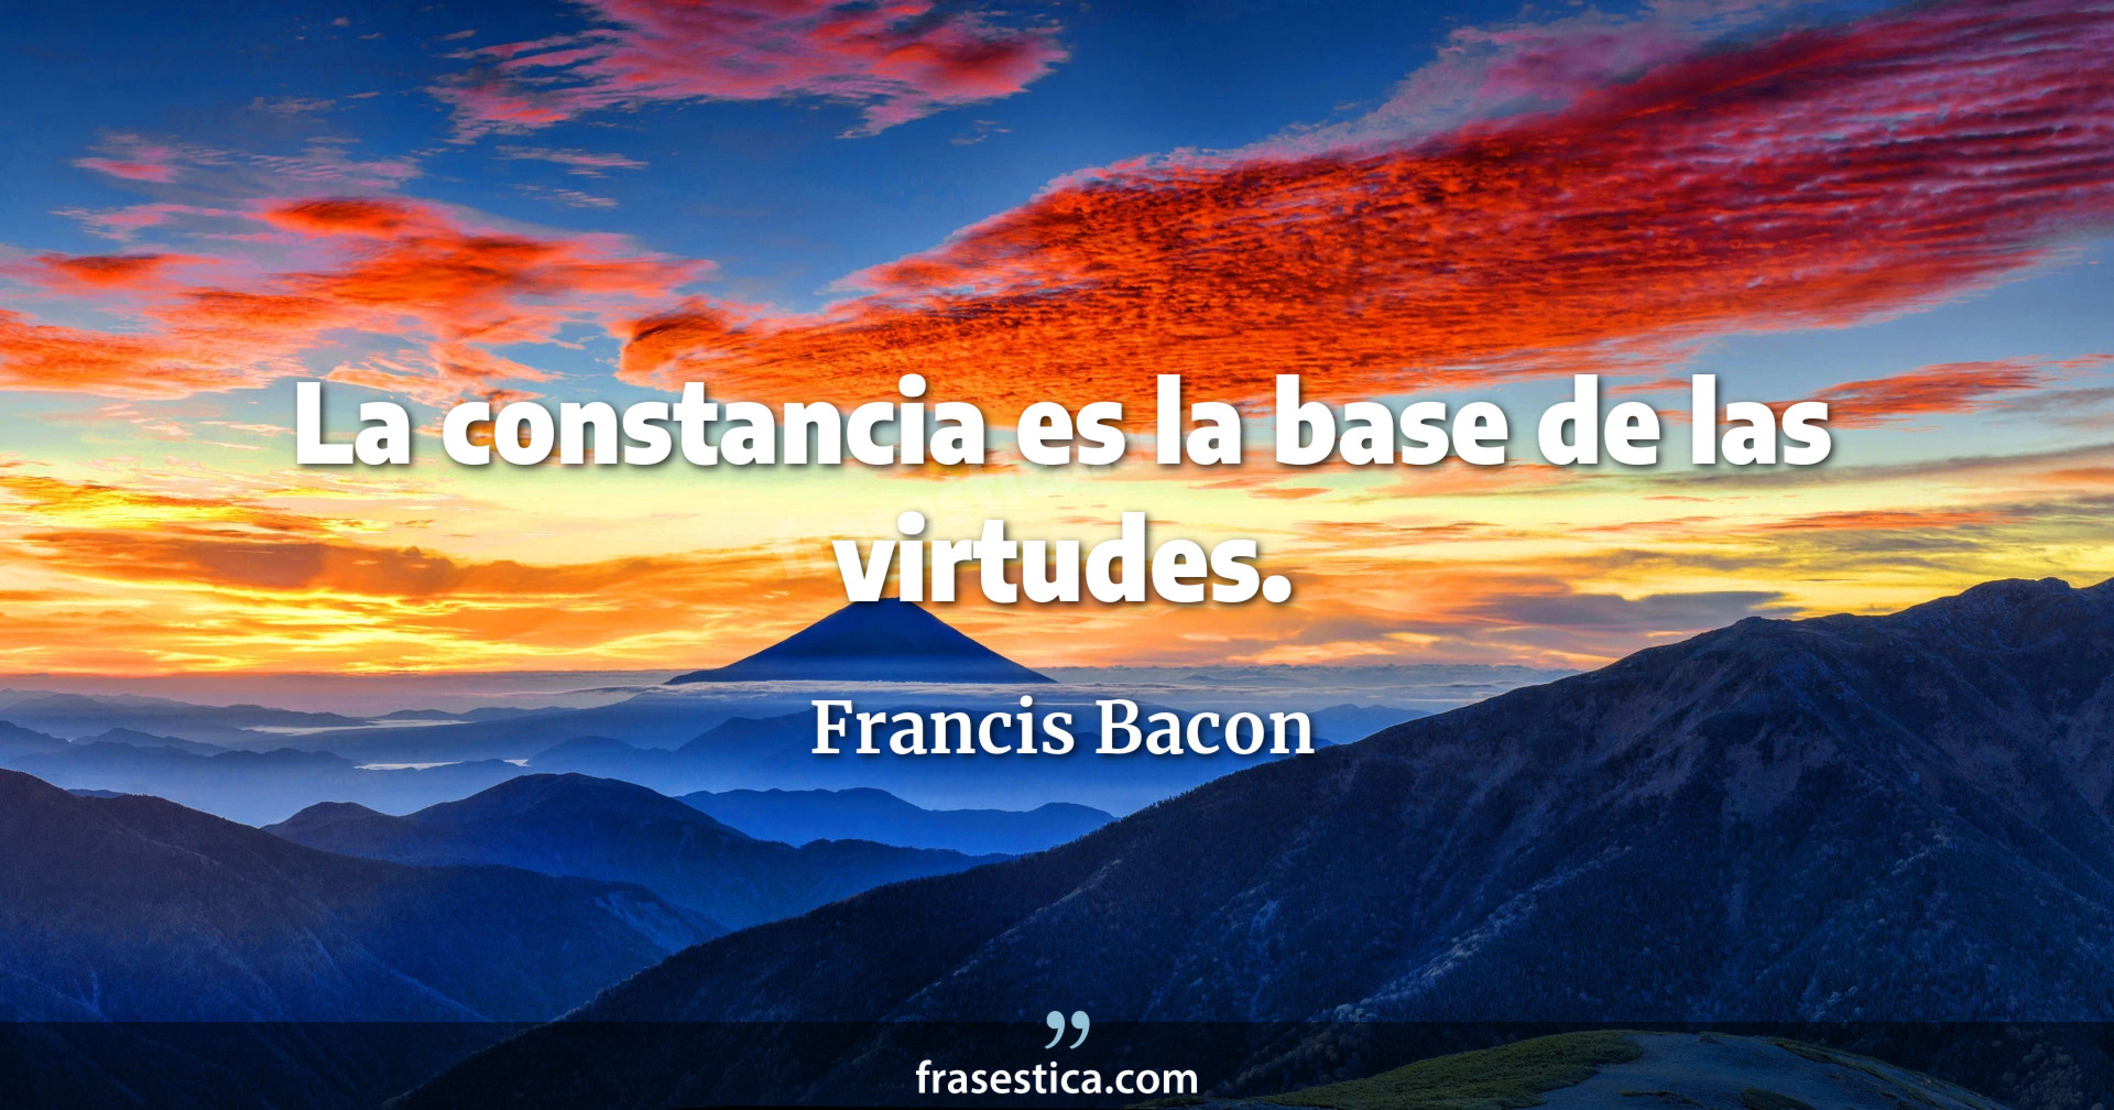 La constancia es la base de las virtudes. - Francis Bacon